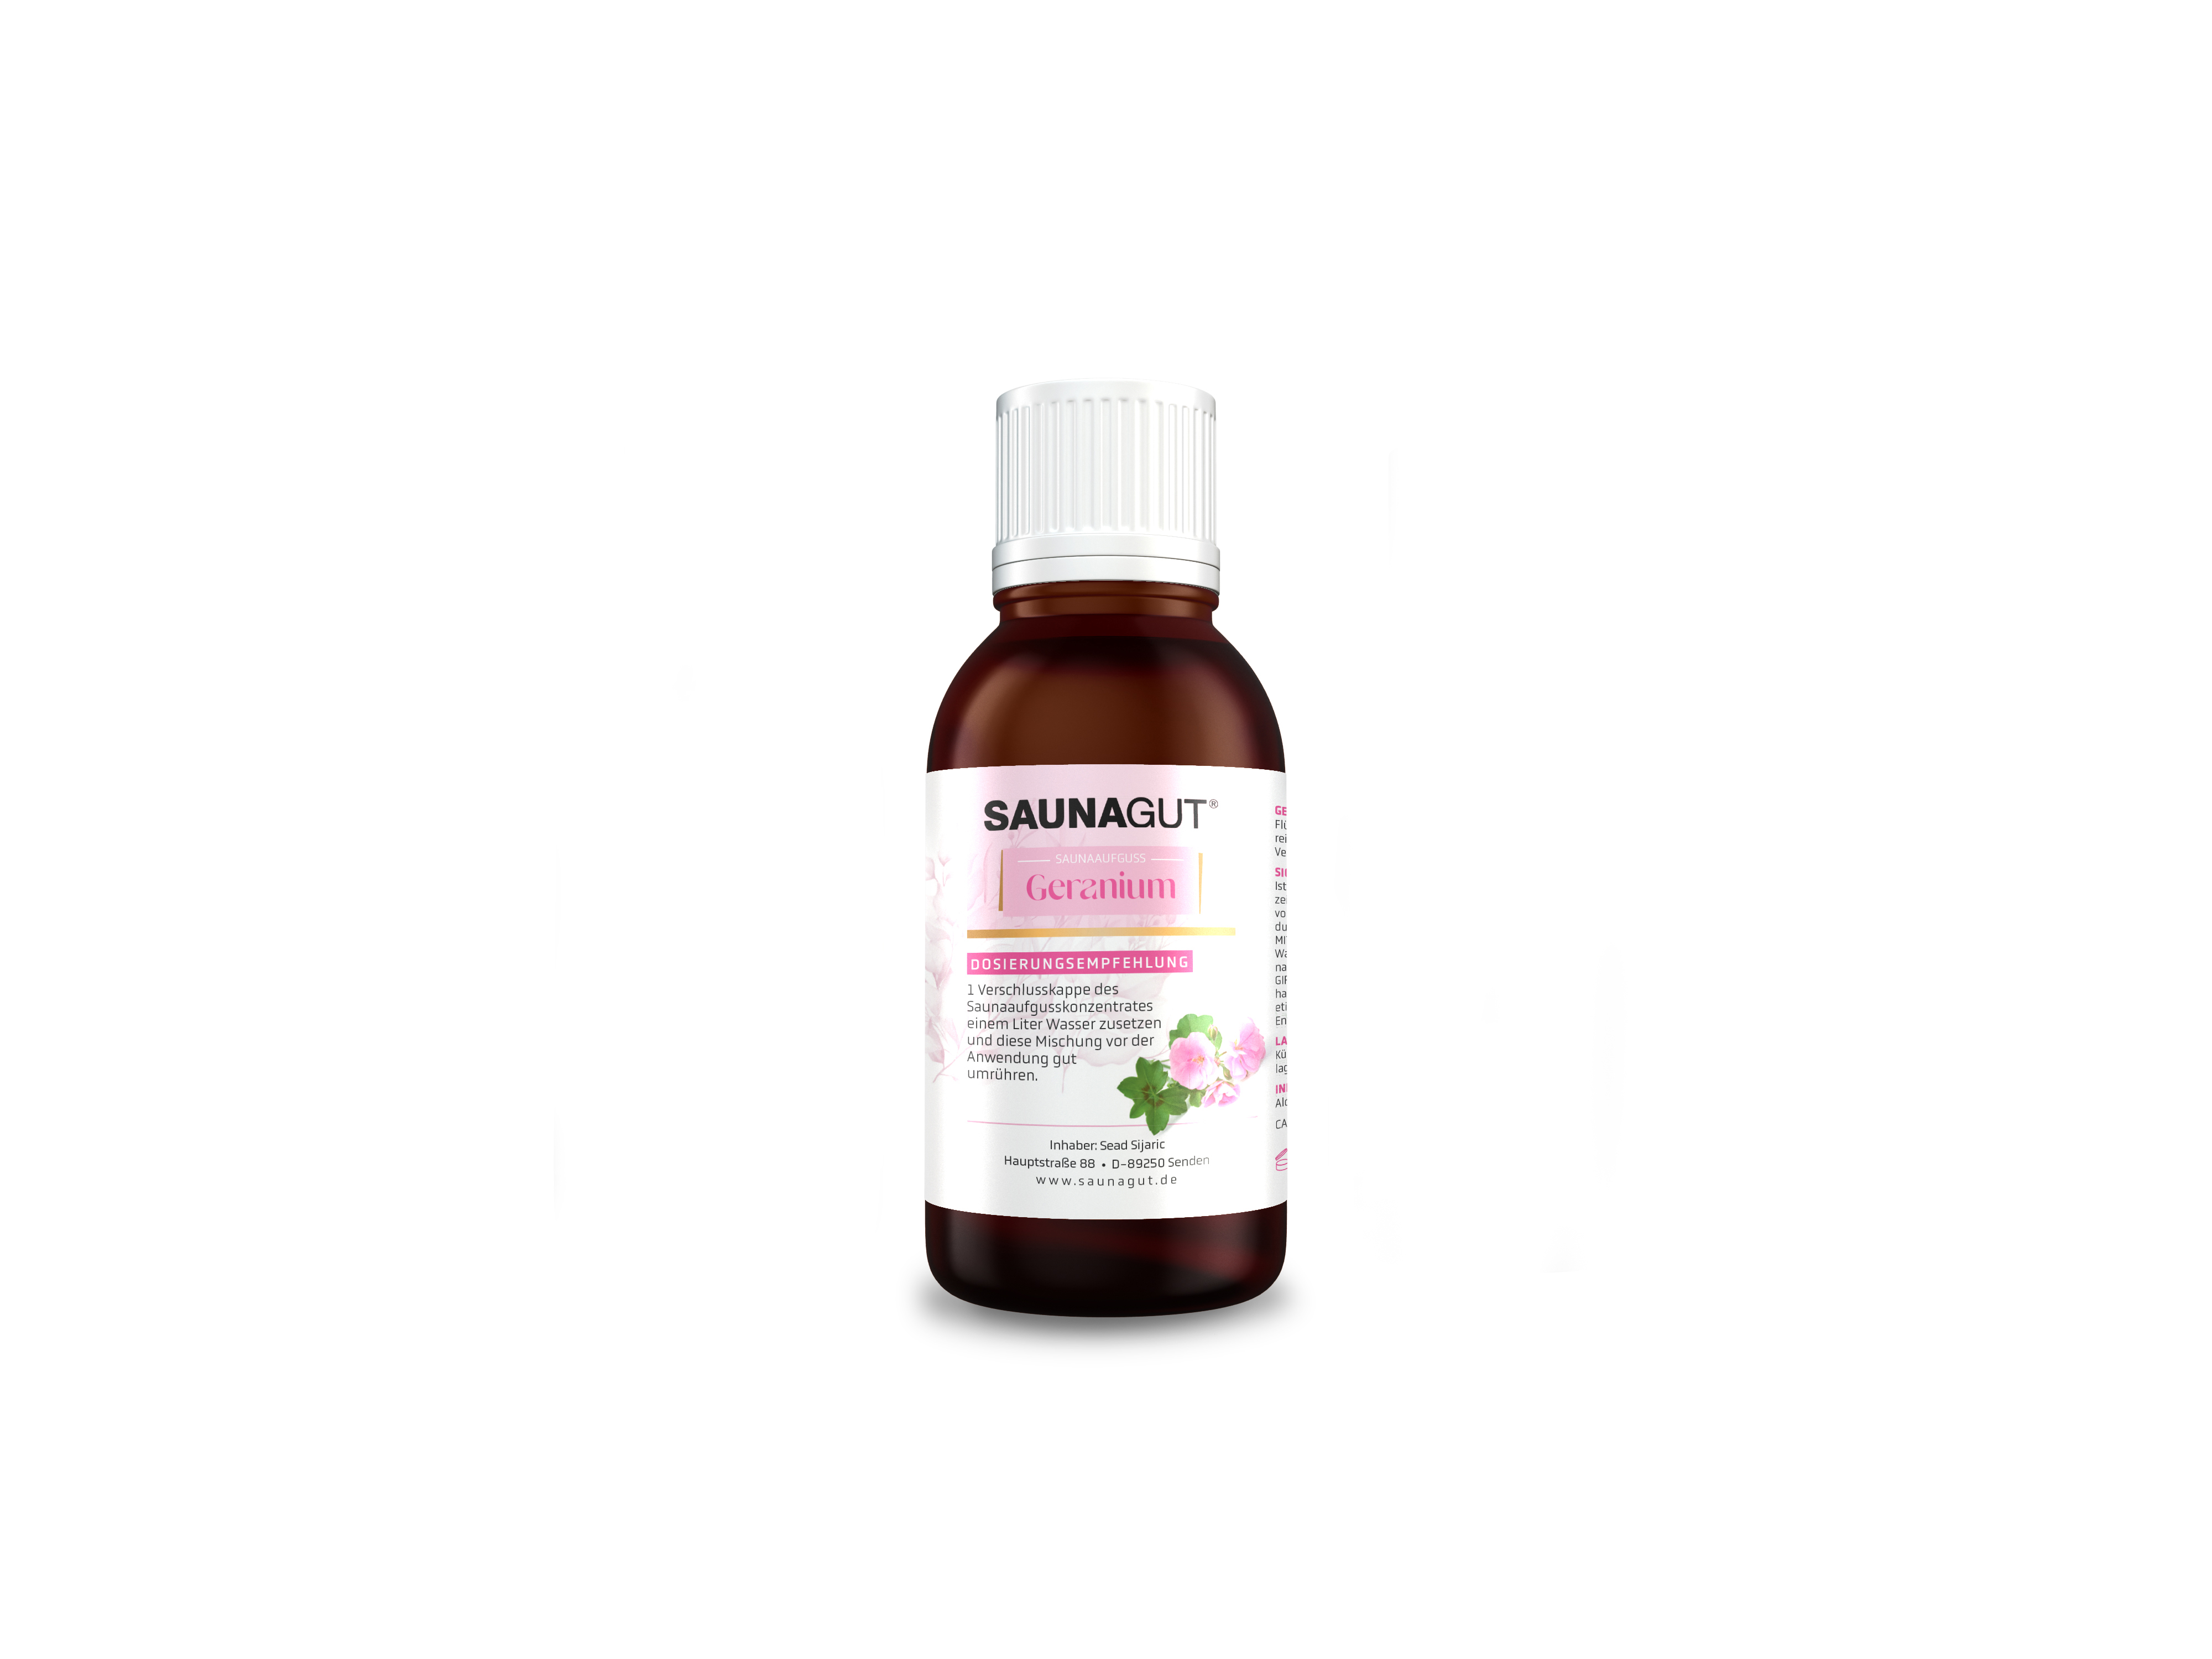 SAUNAGUT® Saunaduft Geranium, Glasflasche 50 ml